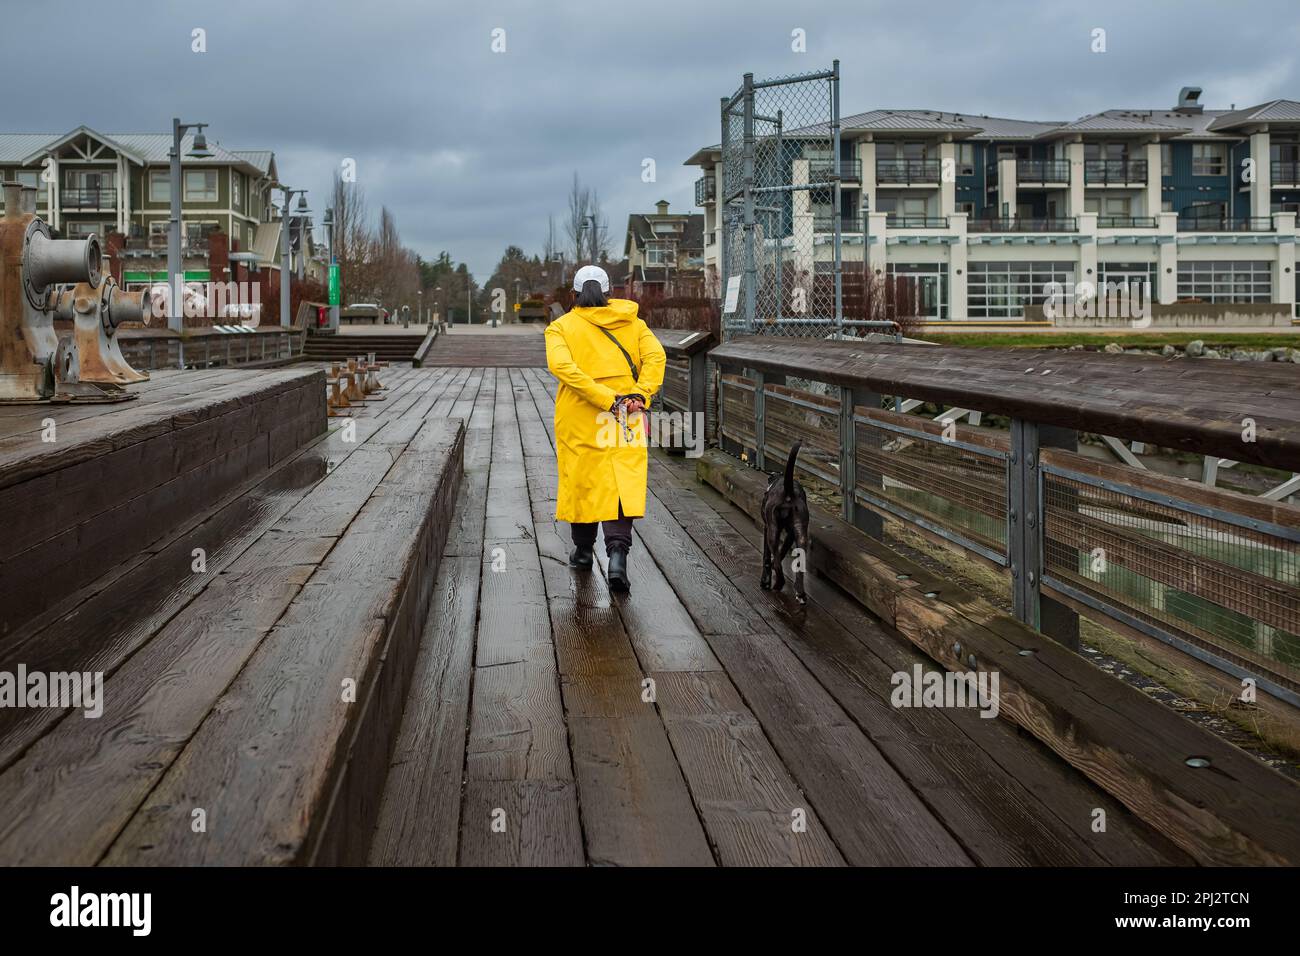 Marcher le chien en imperméable jaune le jour de la pluie. Une femme et un chien lors d'une promenade en laisse sur un passage dans un parc urbain par mauvais temps. Photo de rue, sélectionnez Banque D'Images